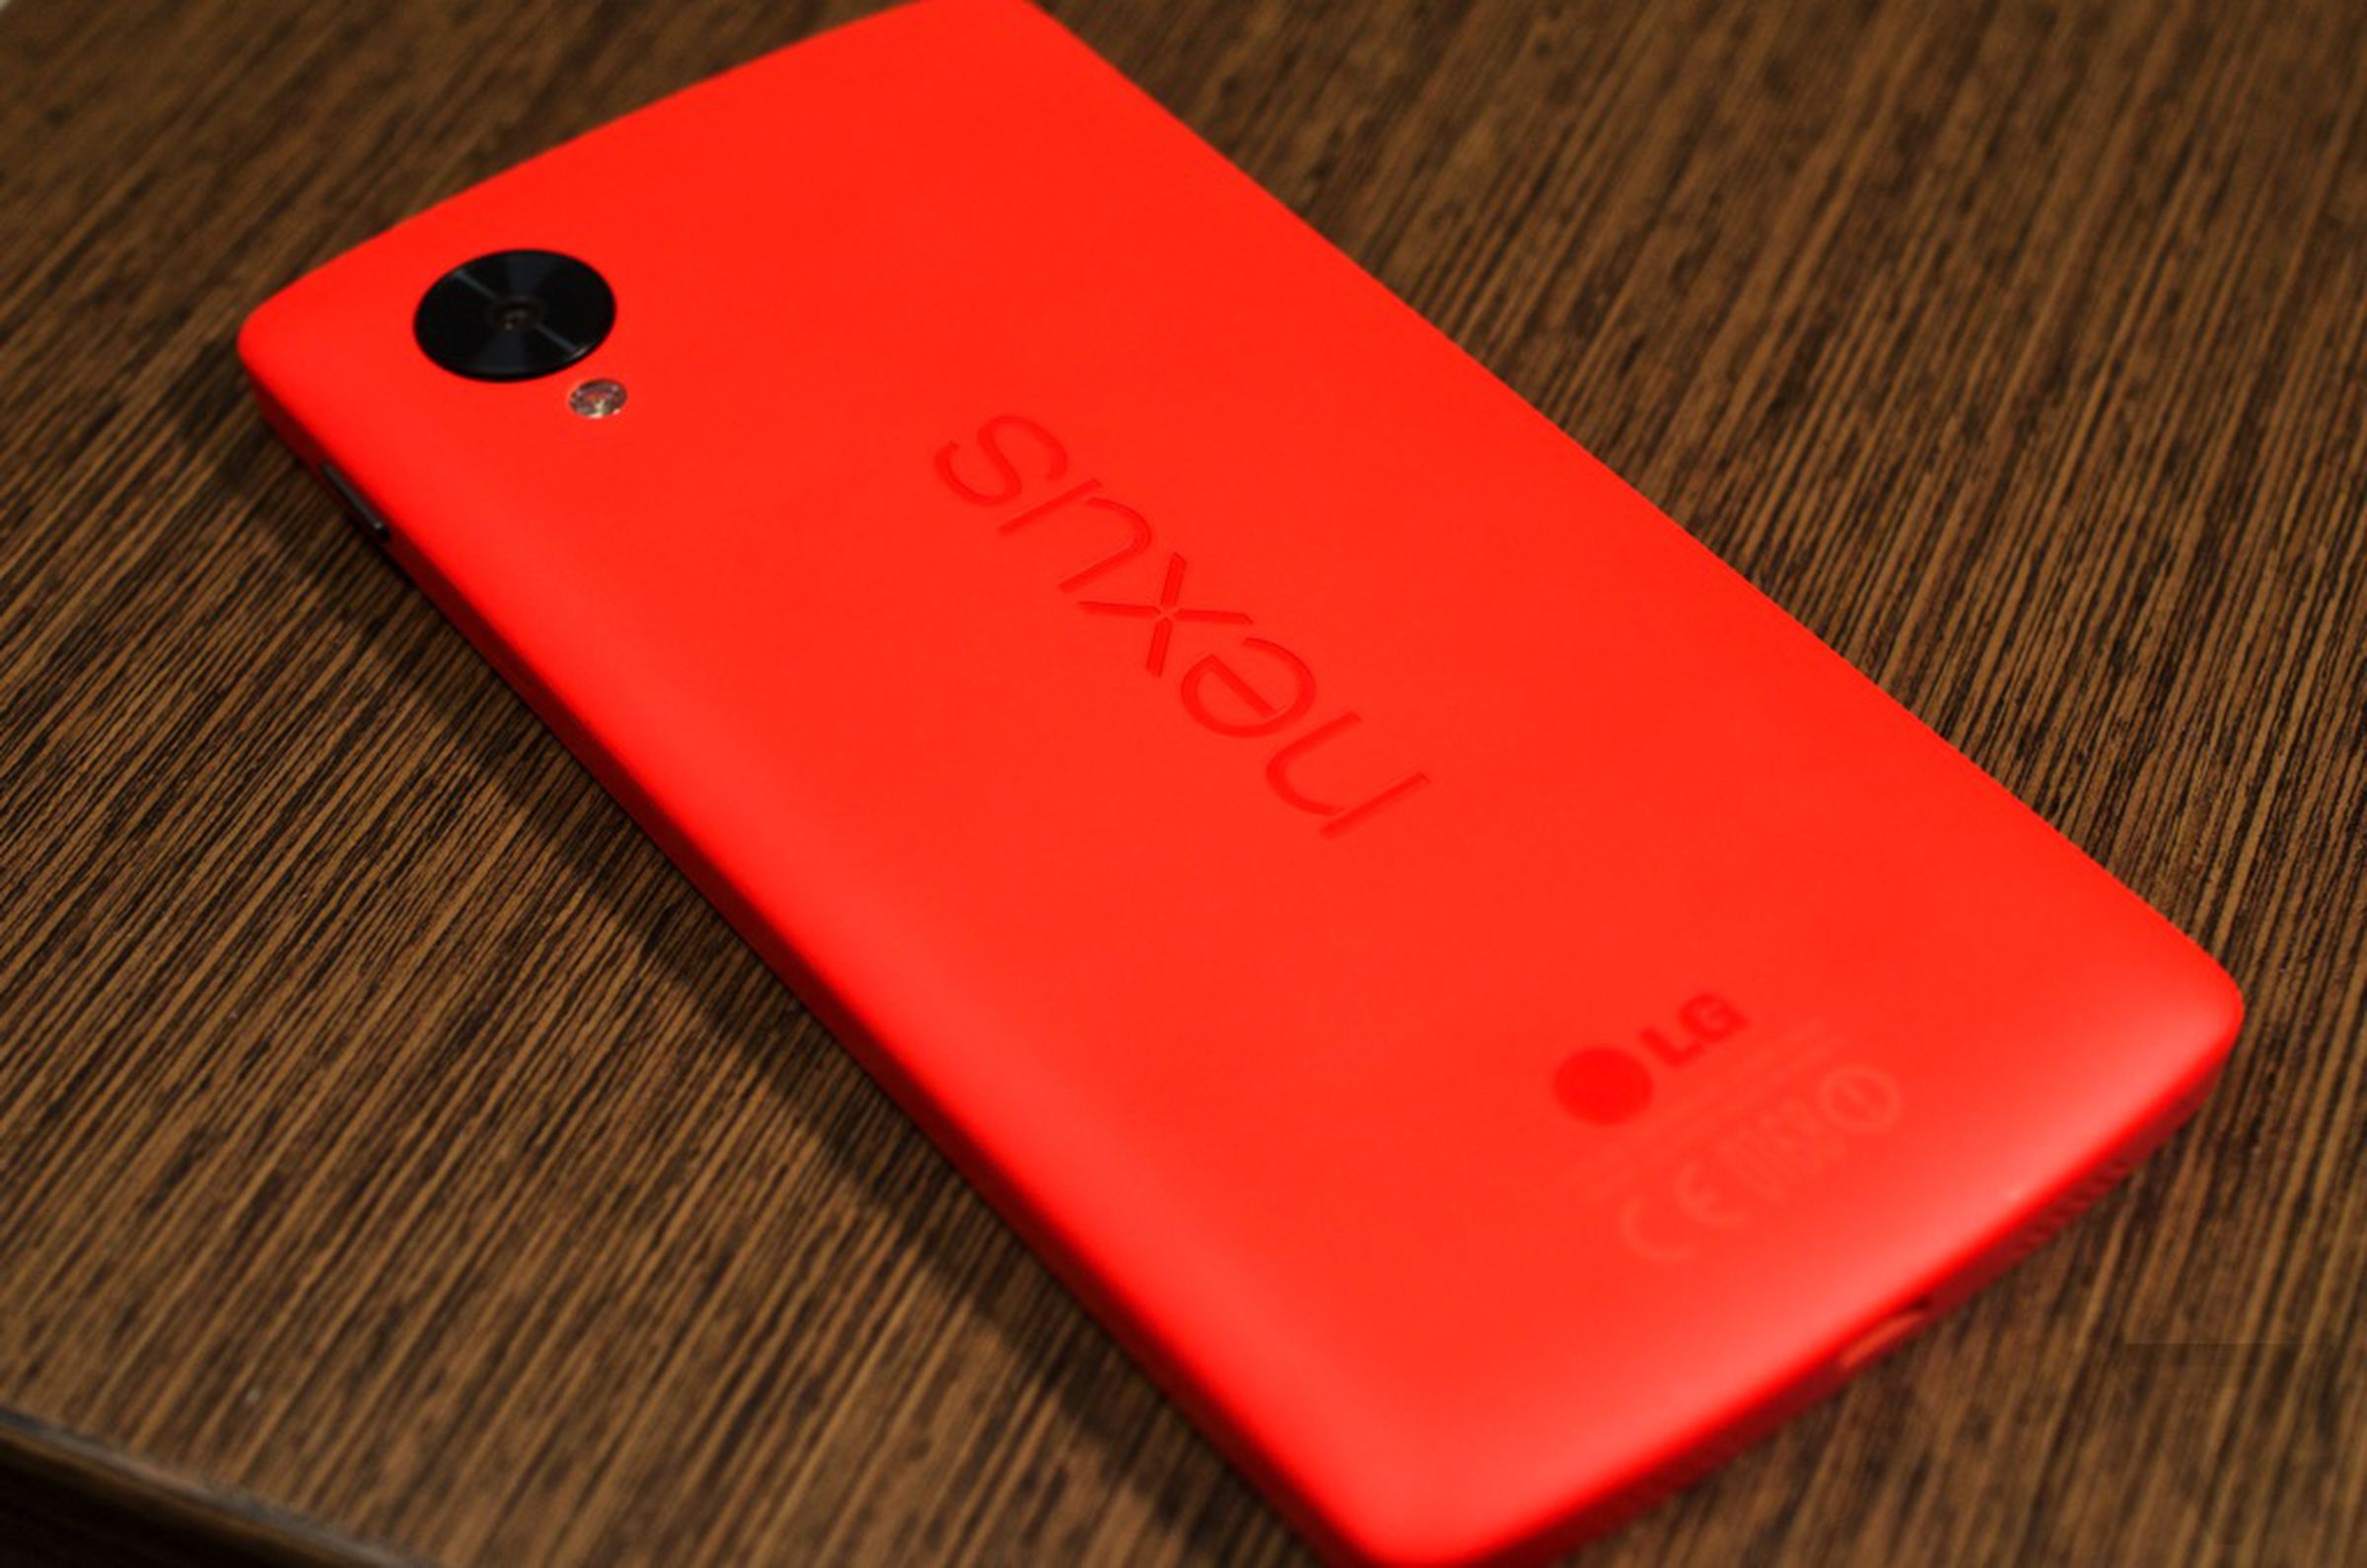 Nexus 5 red model hands-on pictures